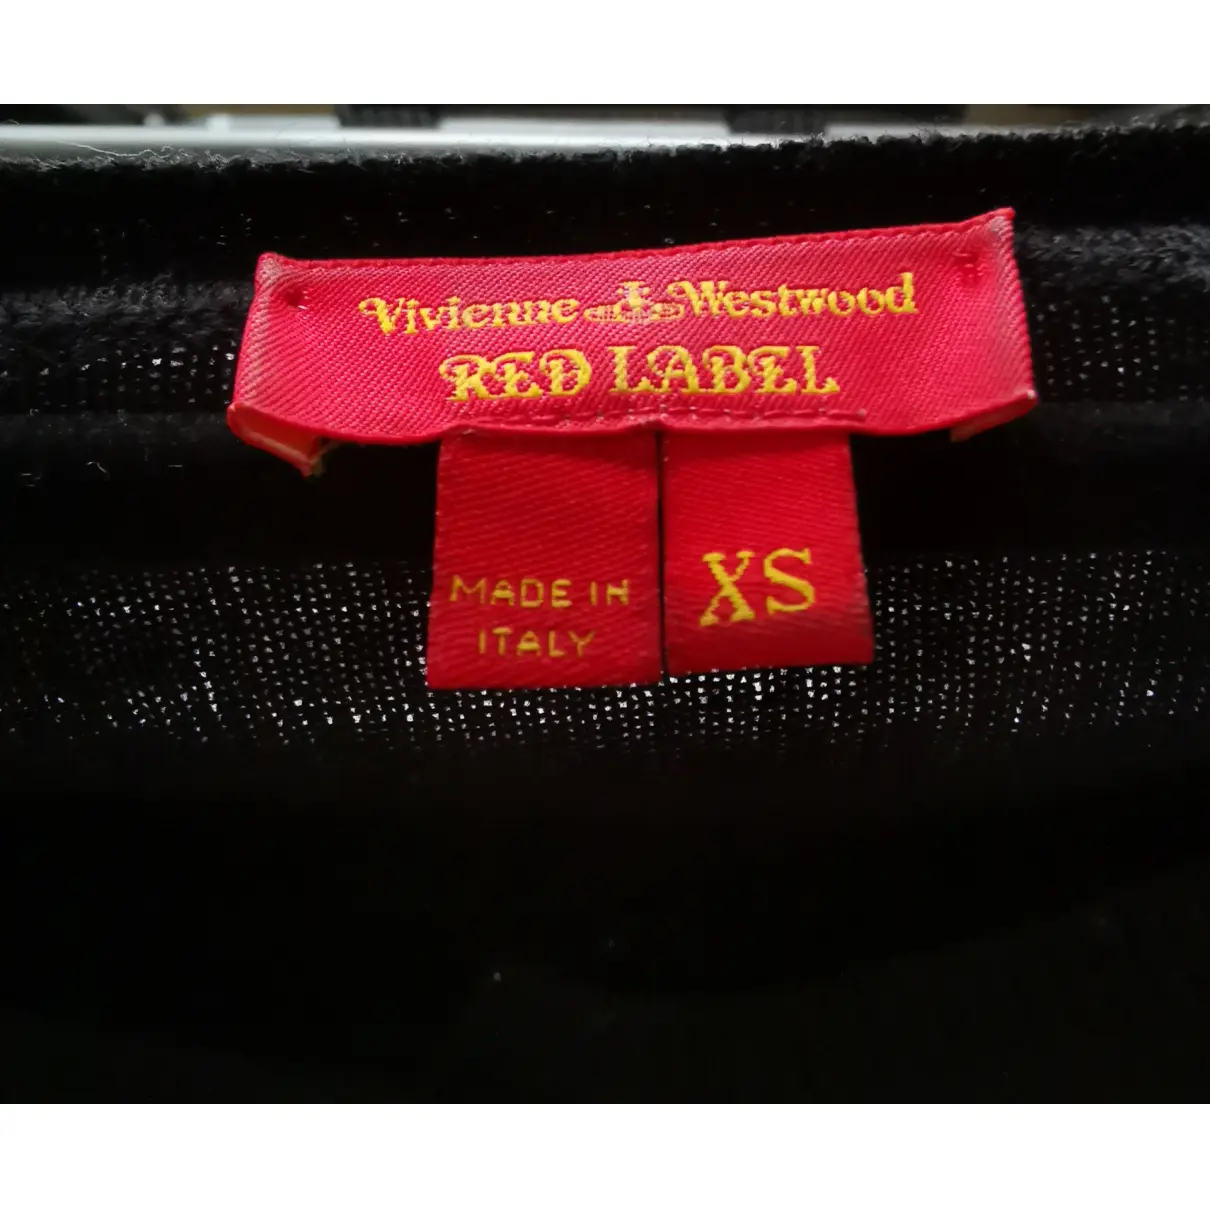 Luxury Vivienne Westwood Red Label Knitwear Women